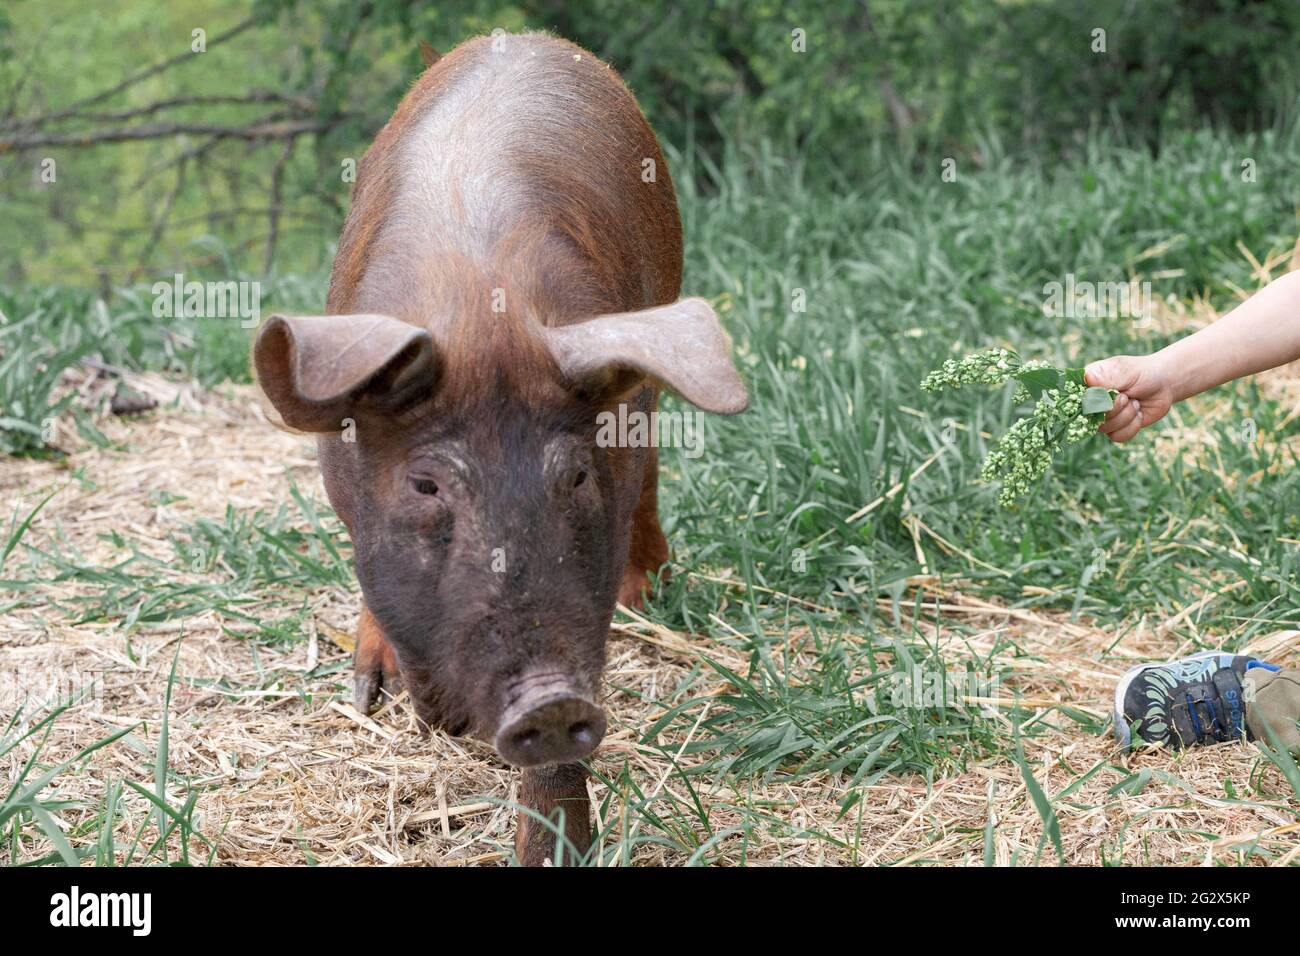 lechón con pelo marrón oscuro y cola de cerdo rizado en una jaula comiendo hierba en una granja de cerdo Foto de stock